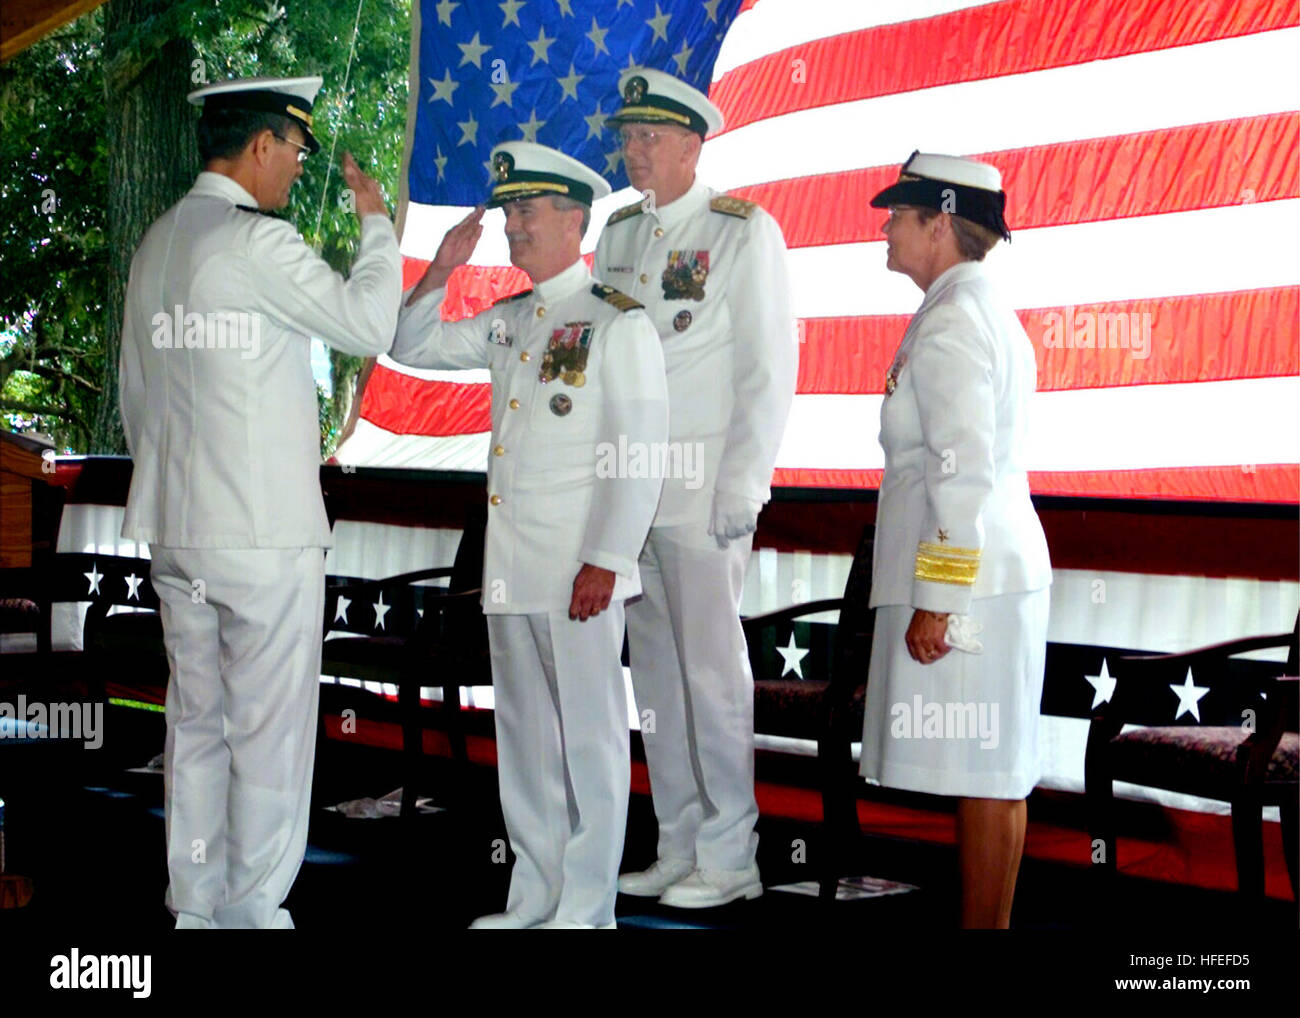 030606-N-6407M-007 Naval Air Station Jacksonville, Floride (Juin 6, 2003) -- Le Capitaine Ralph Lockhart (à gauche) est relevée par le Capitaine John Sentell (droite) en tant que Commandant Naval Hospital Jacksonville lors d'une cérémonie tenue à bord Naval Air Station Jacksonville réduite : Chirurgien général de la Marine Vice Adm. Michael Cowan et commandant de la marine sud-est, région de l'arrière Adm. Annette Brown. Le capitaine Lockhart a pris sa retraite après 42 années de service de la Marine. U.S. Navy photo by Hospital Corpsman 2e classe John Veres. (Libéré) US Navy 030606-N-6407M-007 Le capitaine Ralph Lockhart (à gauche) est relevée par le Capitaine John Sentell (ri Banque D'Images